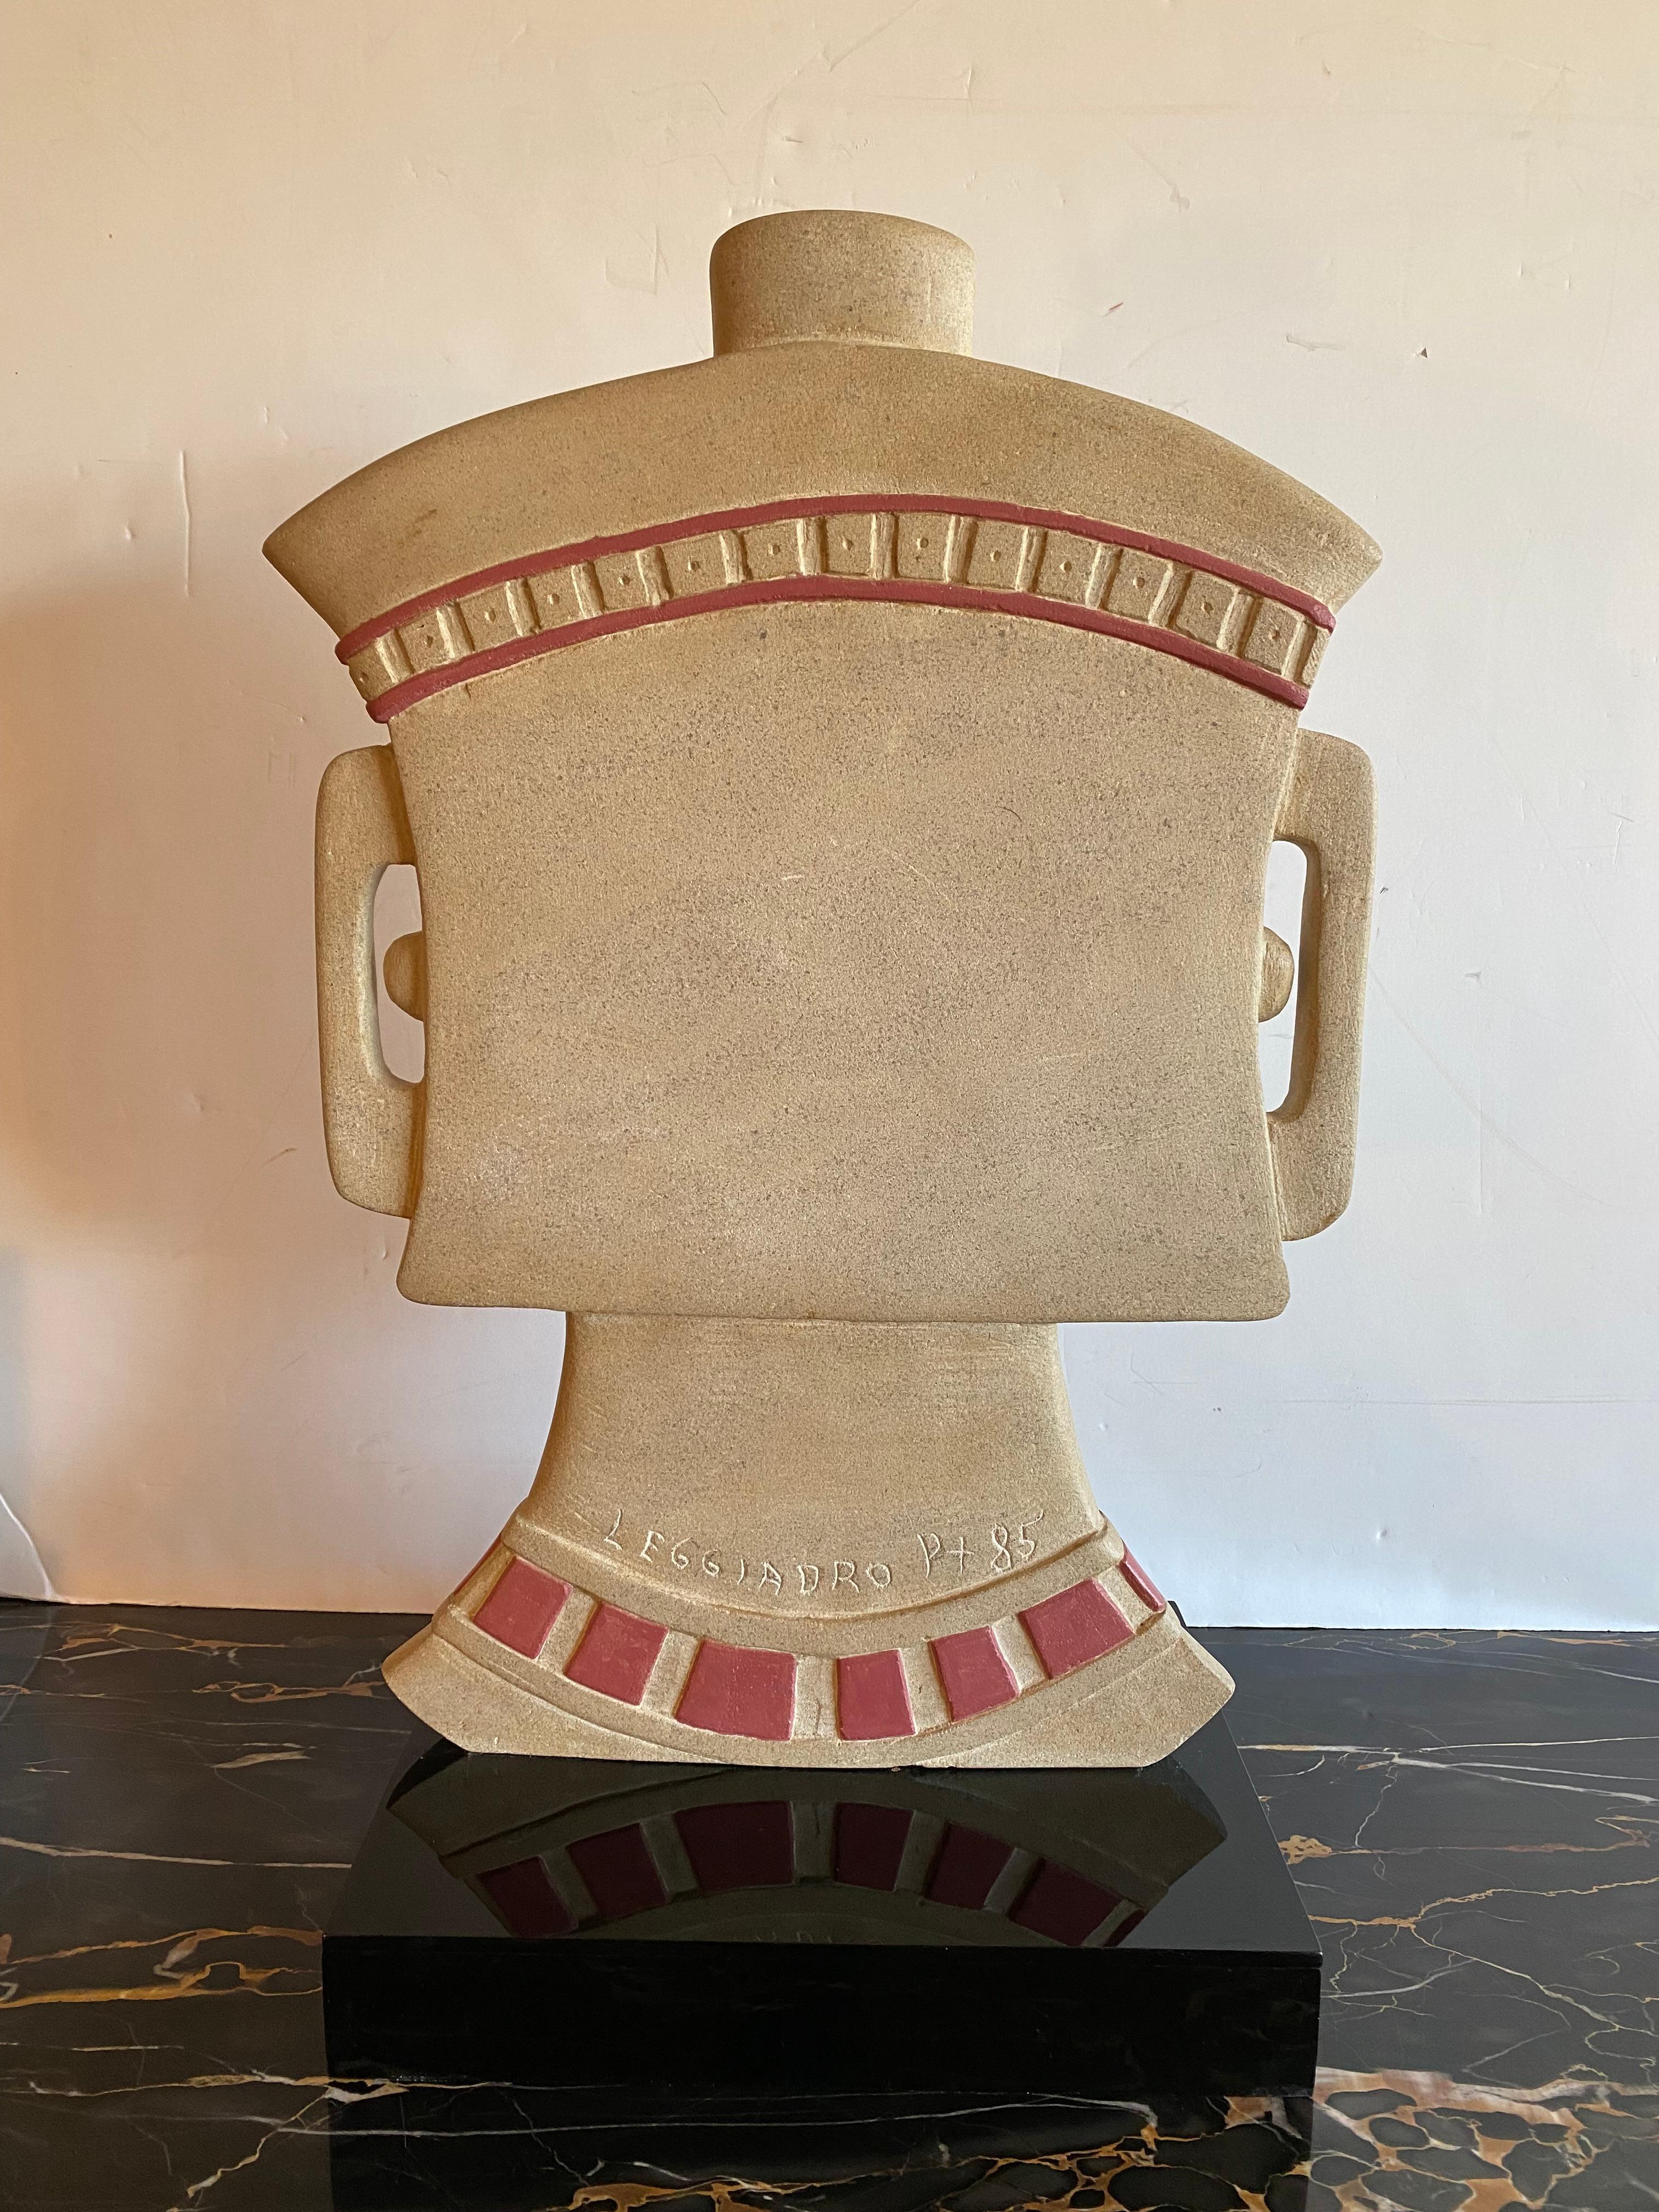 Aztec Head - Sculpture by Vincent Leggiadro